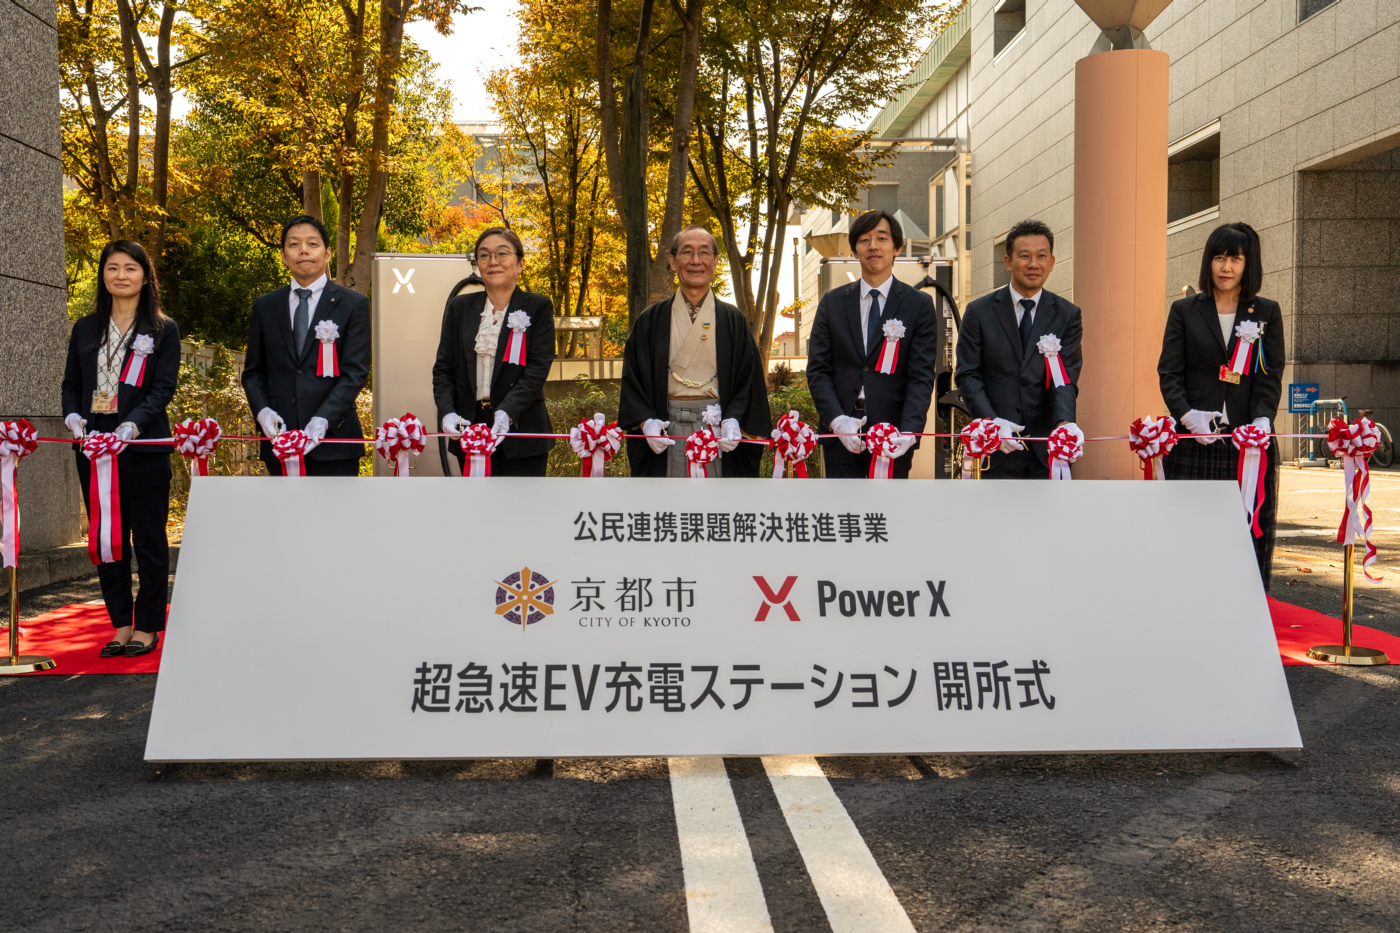 京都市勧業館 みやこめっせ にて超急速 EV 充電ステーションの実証開始